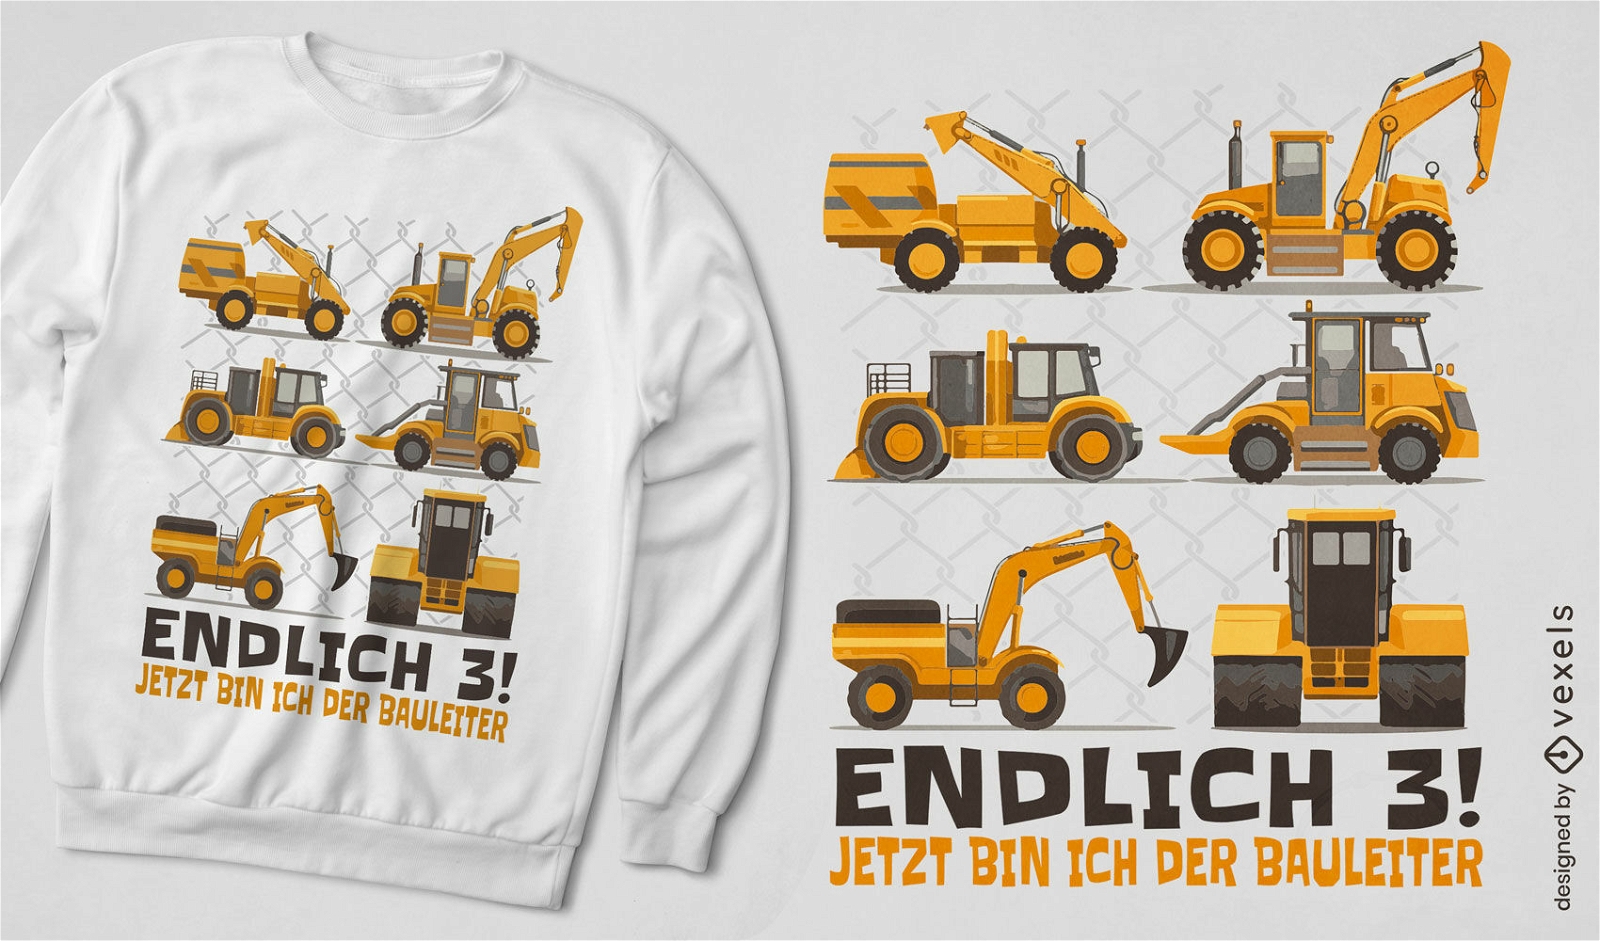 Construction equipment t-shirt design